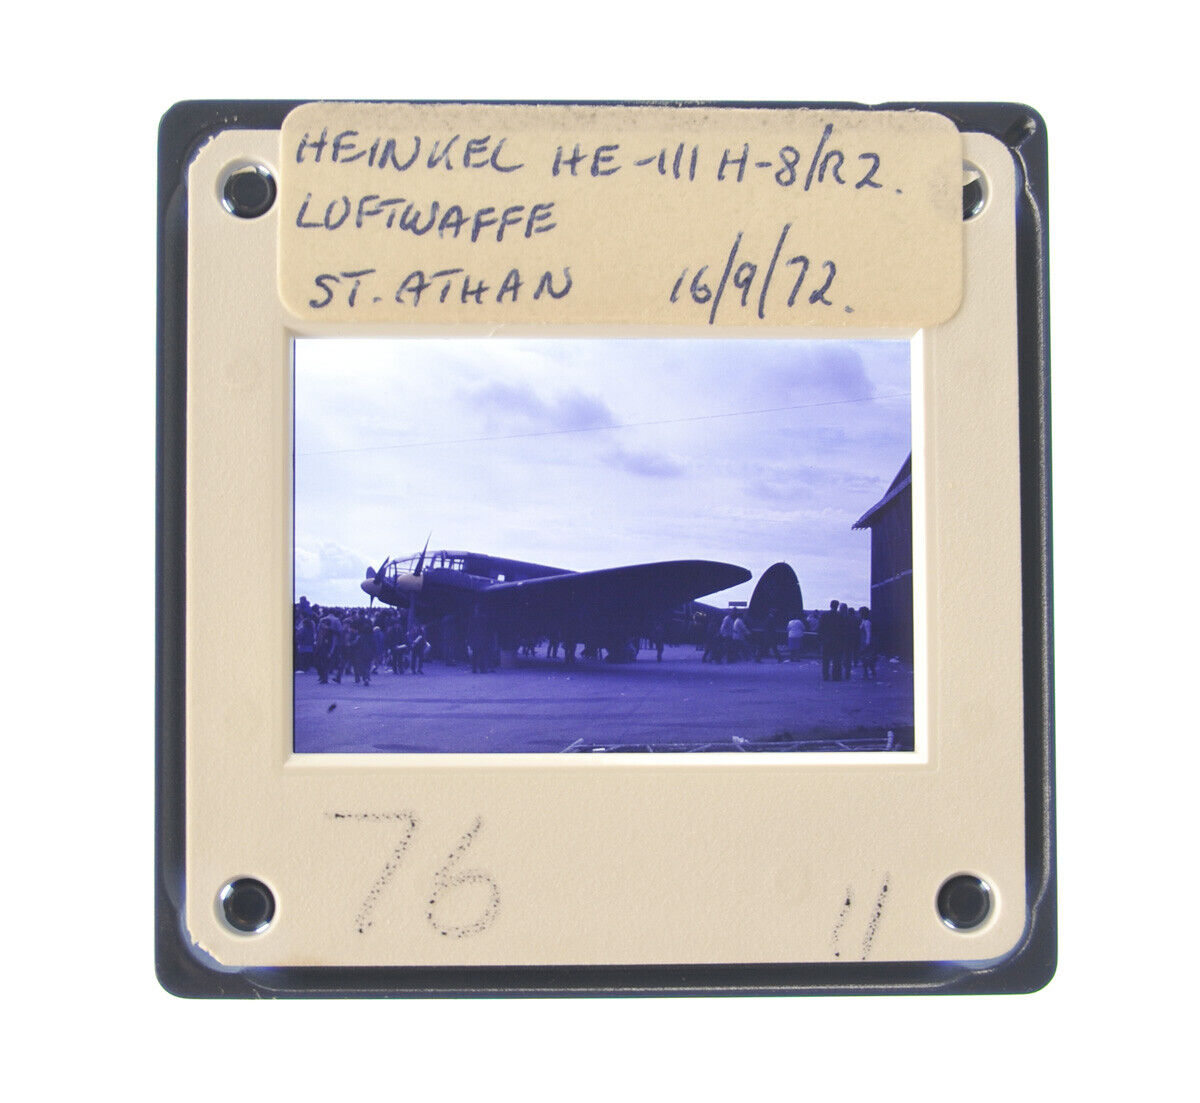 35MM SLIDE AIRCRAFT 1972 HEINKEL HE-111 H-8/R2 LUFTWAFFE AT ST. ATHAN A59